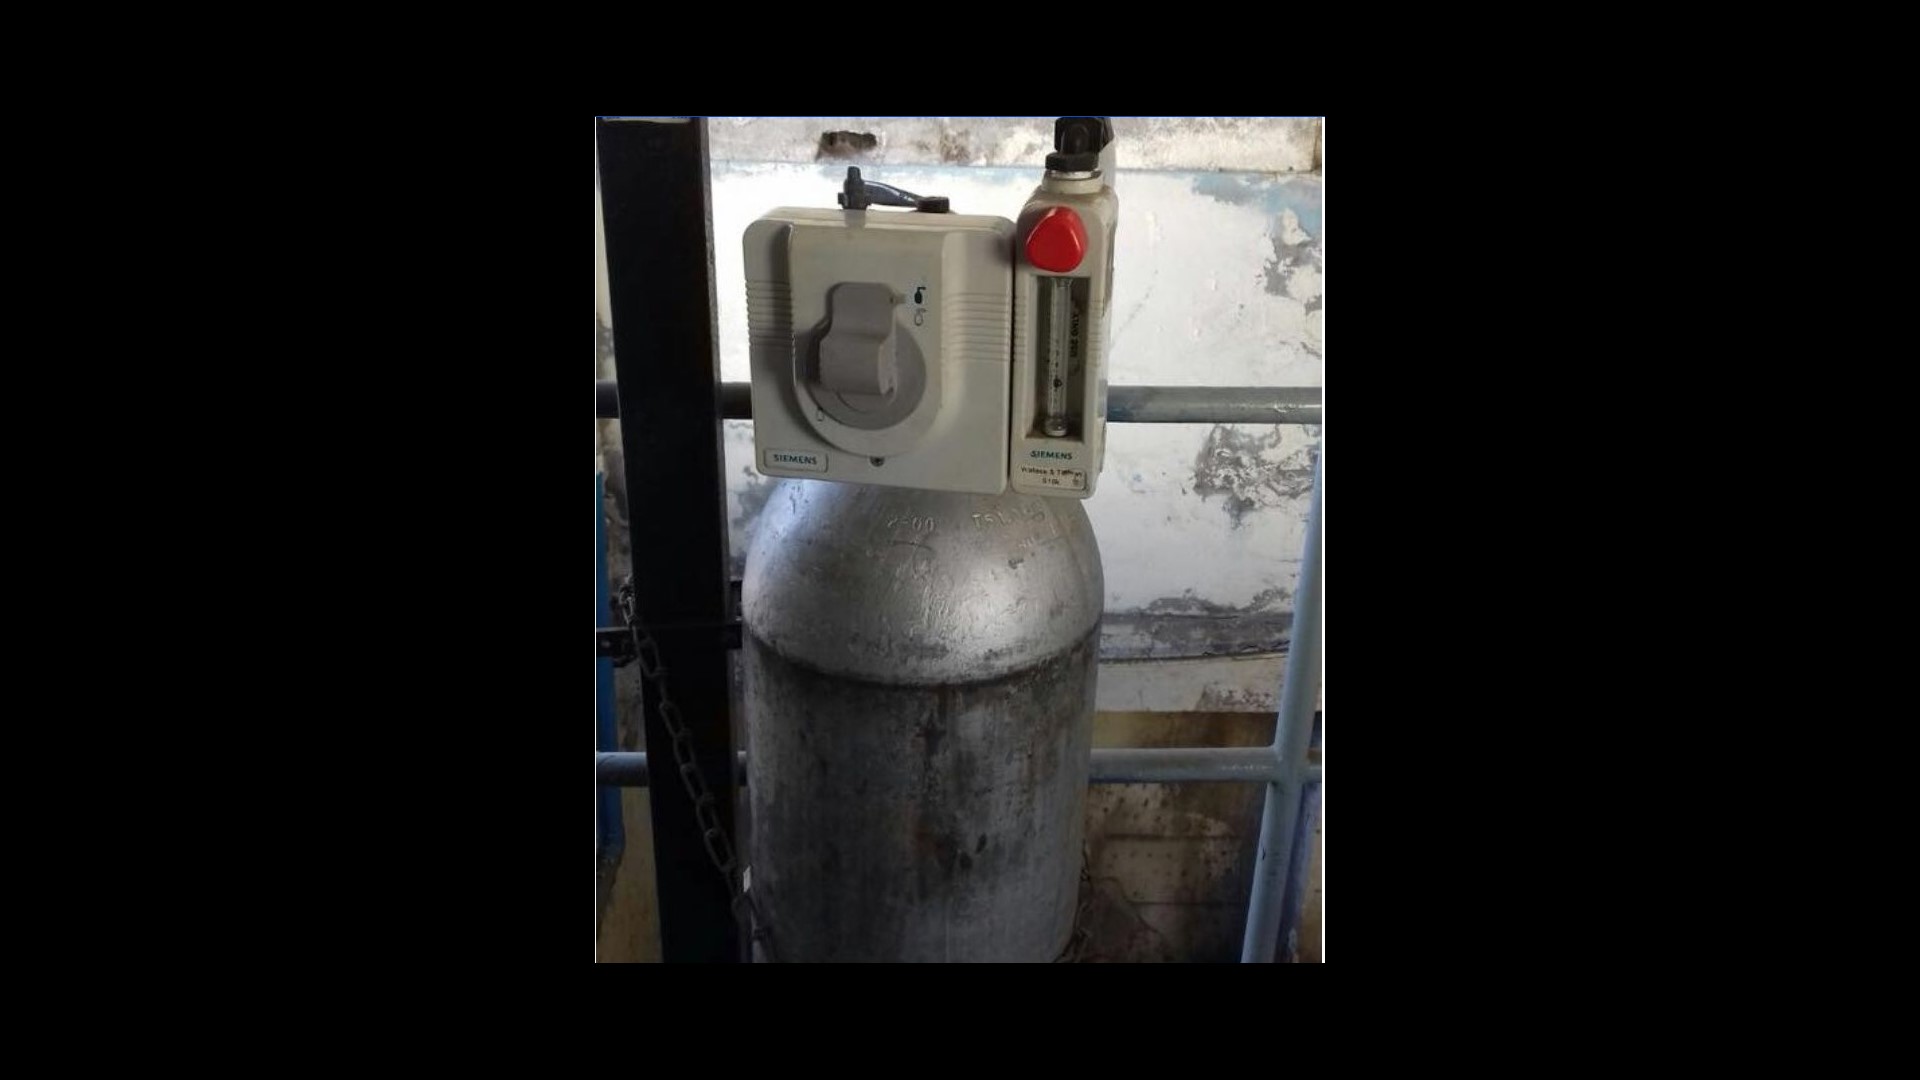 Localizan tanque de gas cloro robado en oficinas de Ensenada, BC